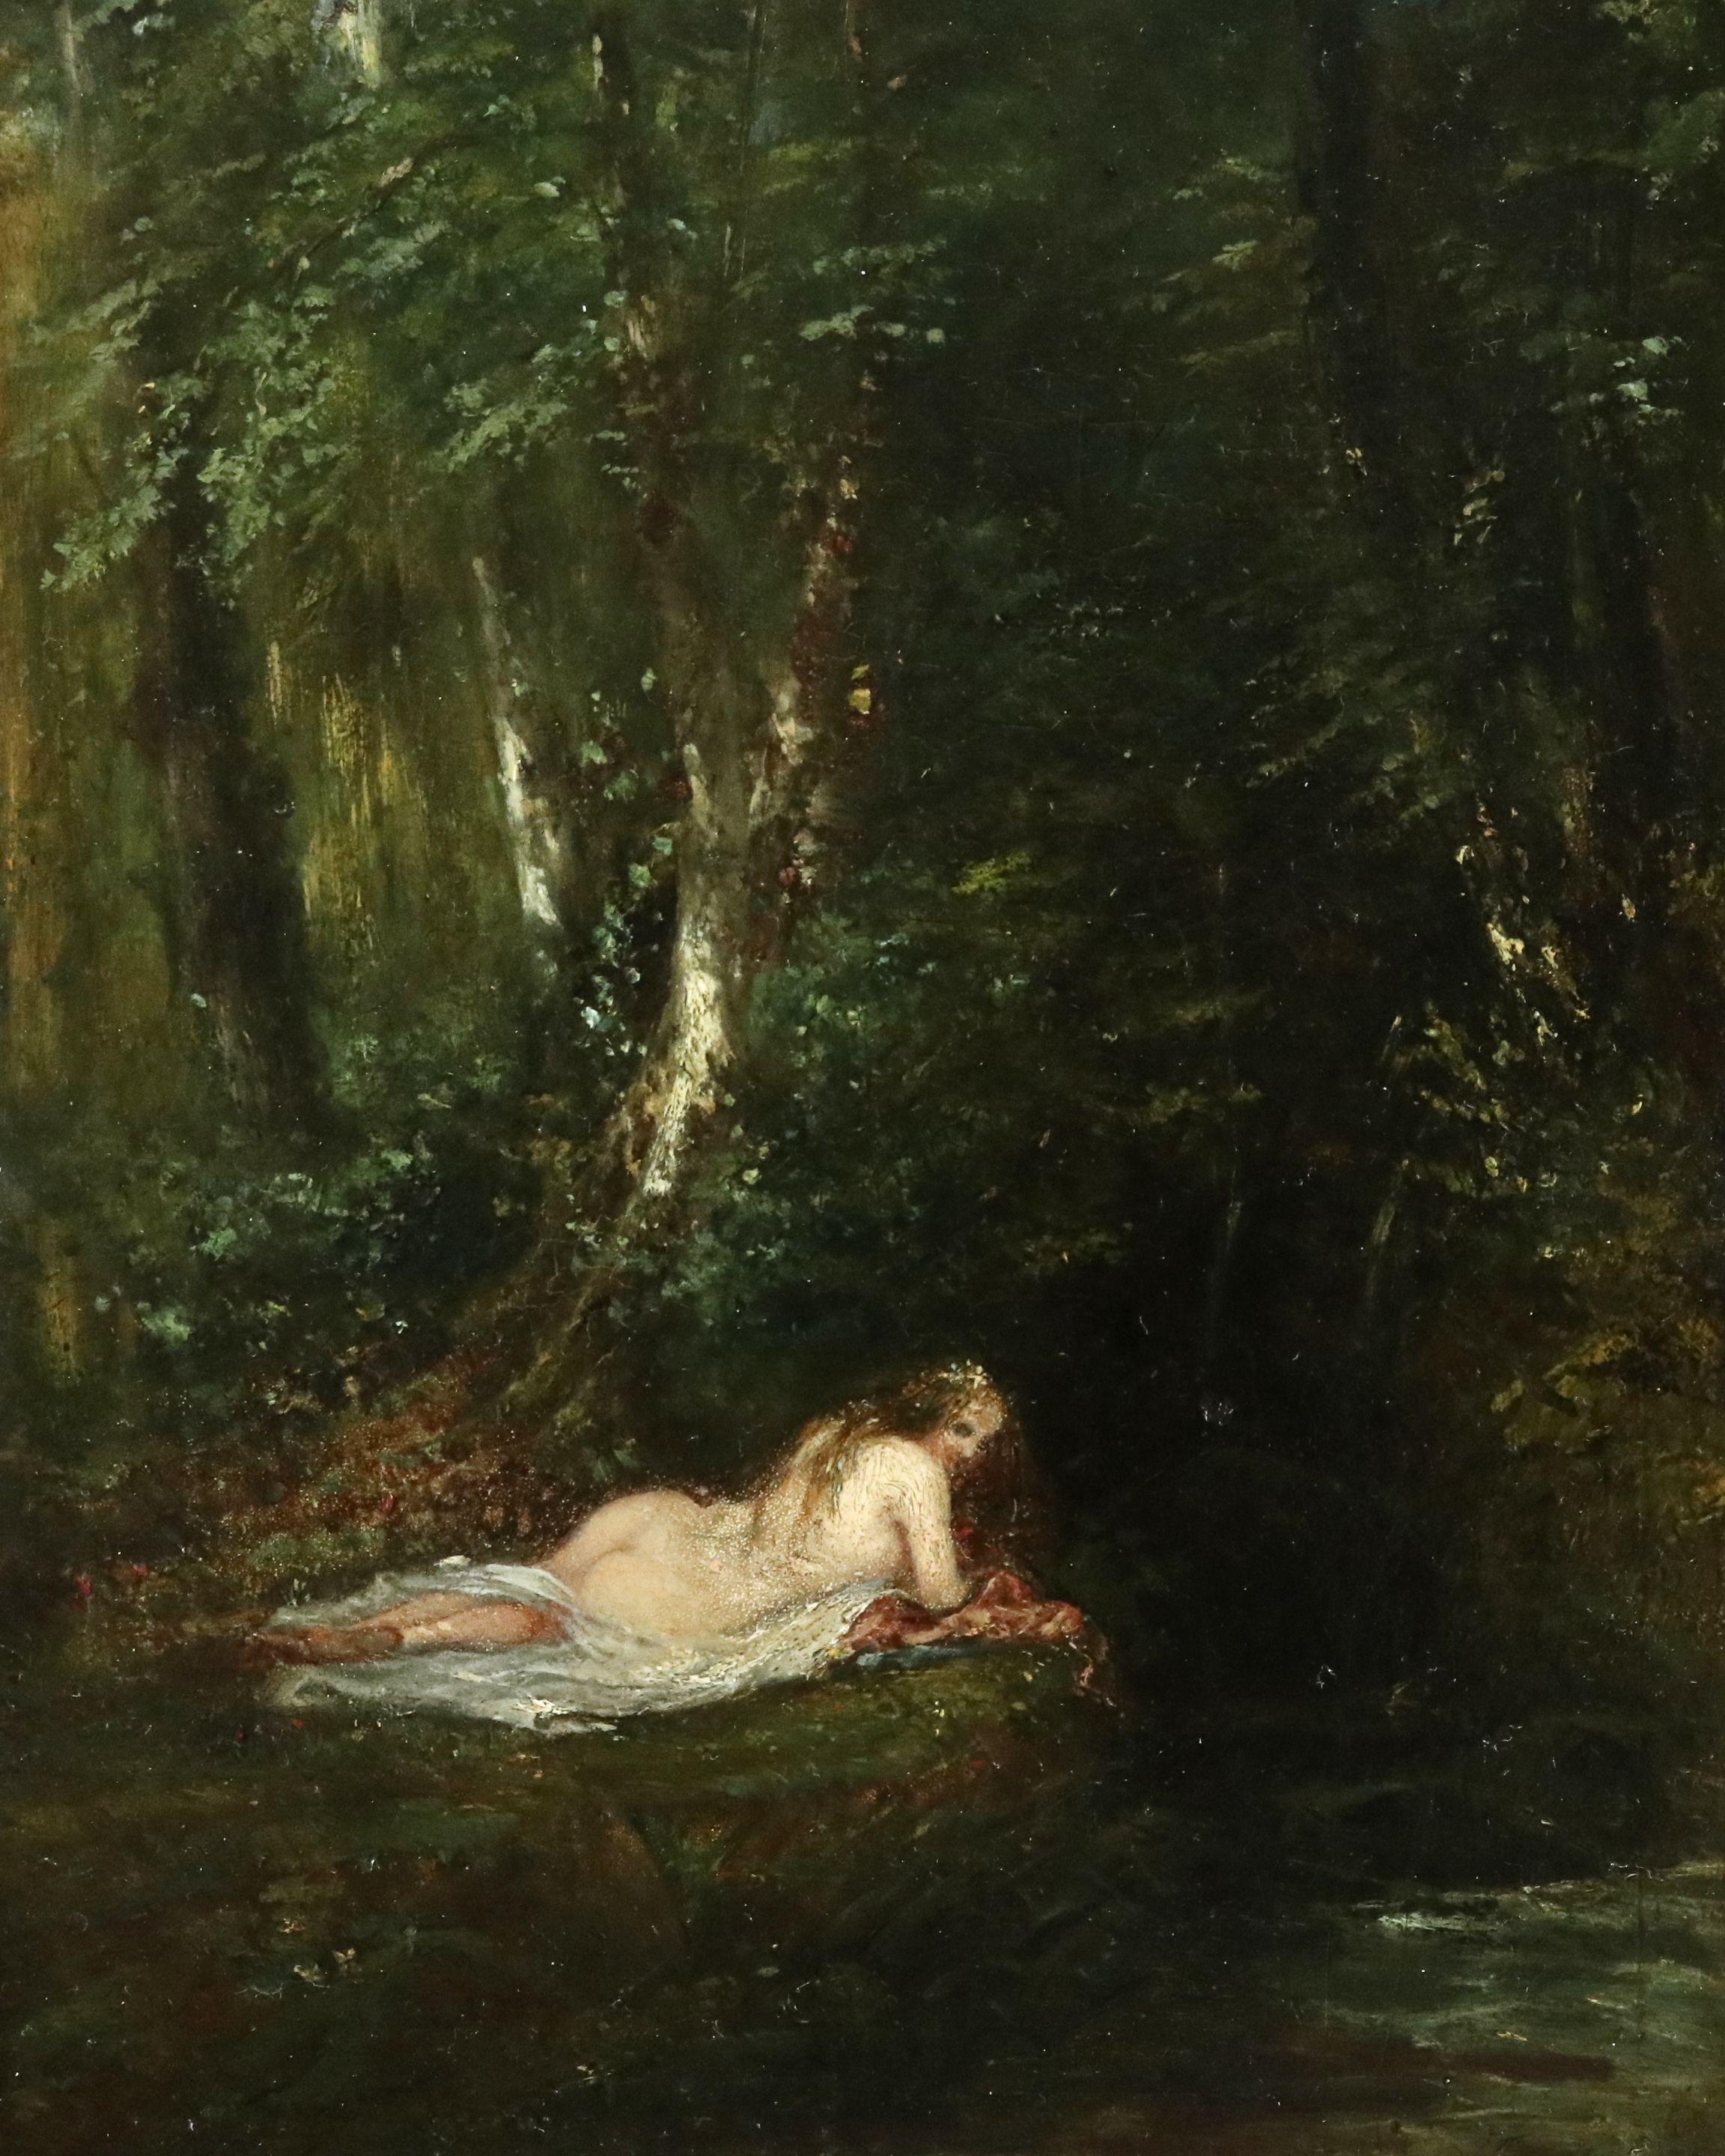 Paul Huet Landscape Painting - La Nymphe des Bois- 19th Century Oil, Nude Figure in Forest Landscape by P Huet 